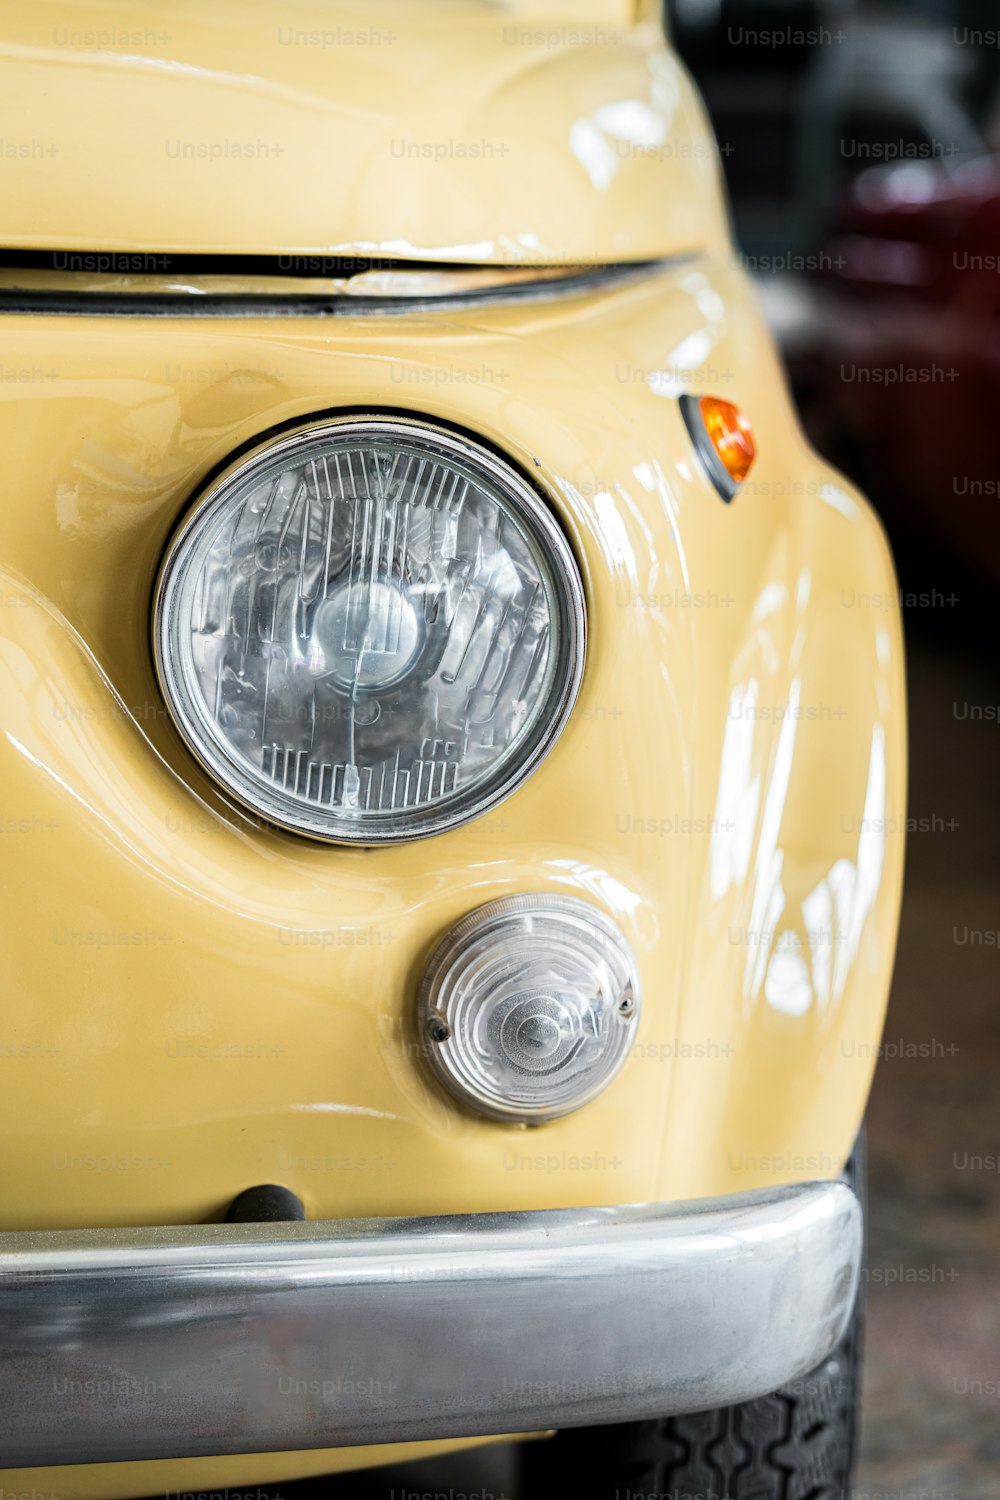 um close up da frente de um carro amarelo